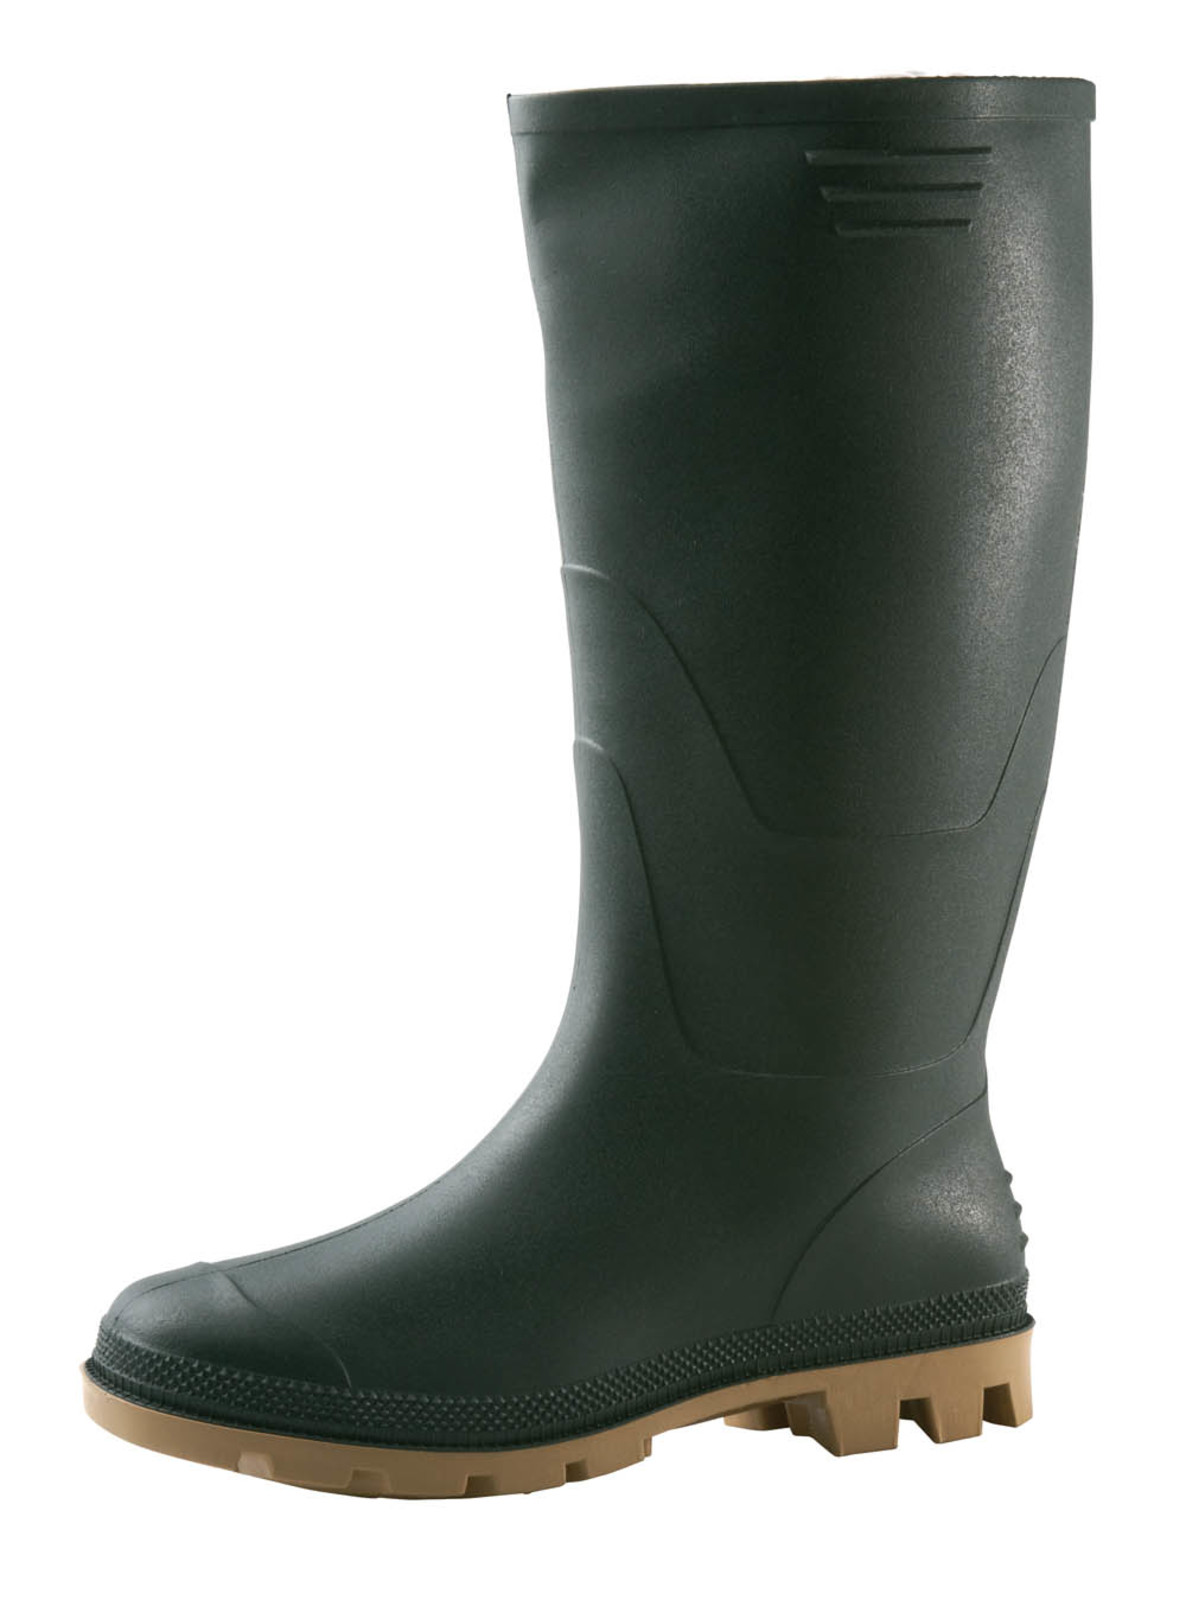 Gumáky Boots Ginocchio PVC - veľkosť: 45, farba: zelená